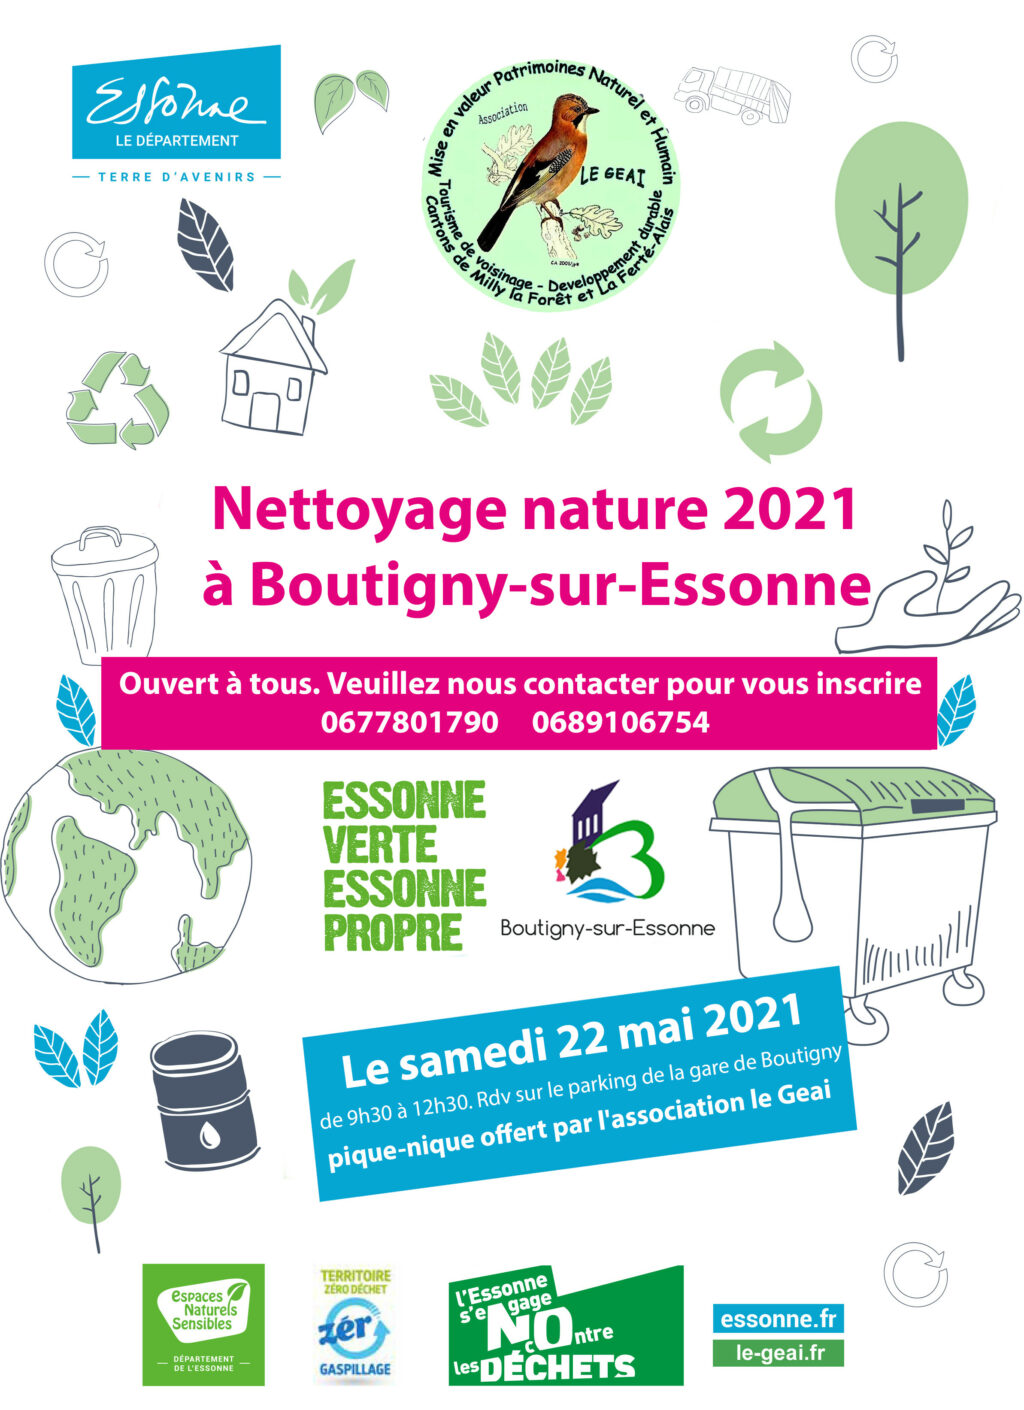 Opération de nettoyage à Boutigny-sur-Essonne le samedi 22 mai 2021.